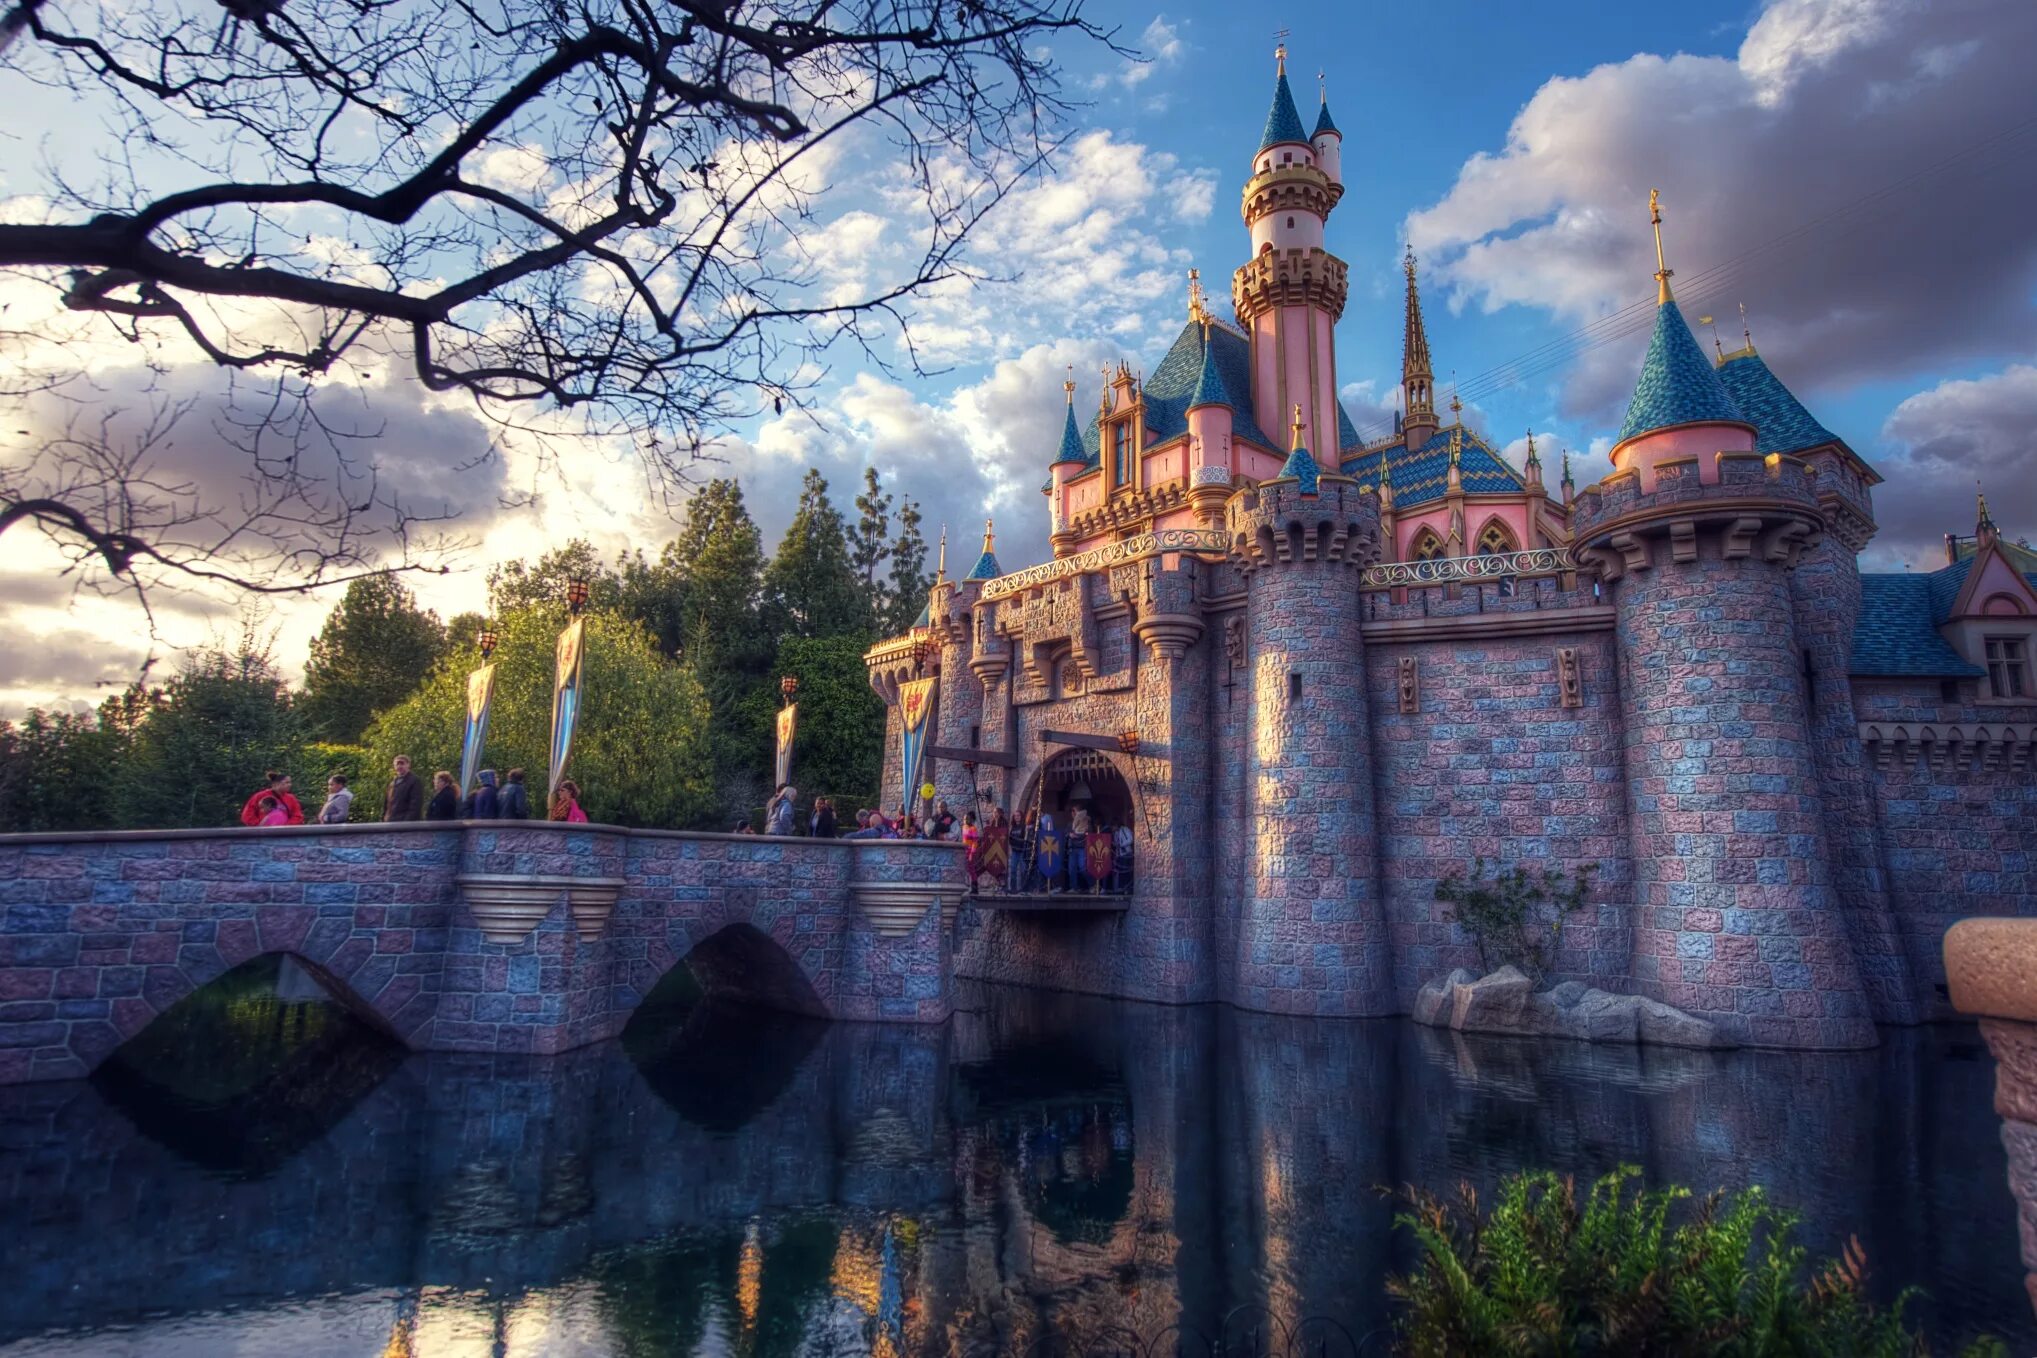 Диснейленд Анахайм замок спящей красавицы. Walt Disney World дворец. Замок спящей красавицы Уолт Дисней. Дворец развлечений